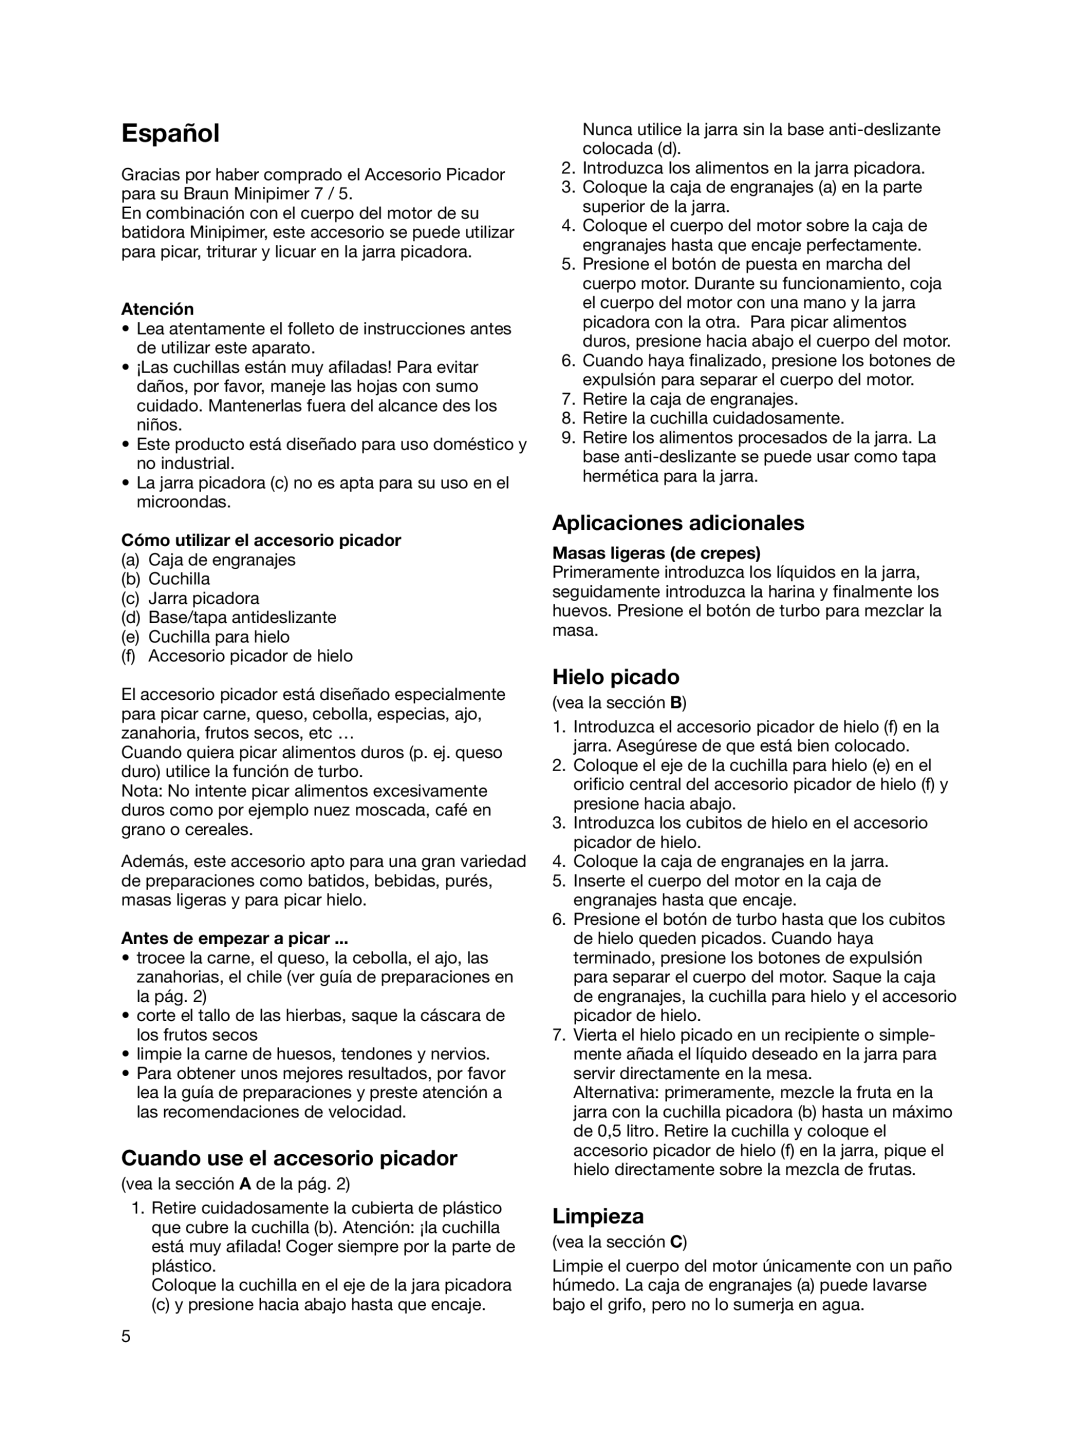 Braun 4191 manual Español, Cuando use el accesorio picador, Aplicaciones adicionales, Hielo picado, Limpieza, Atención 